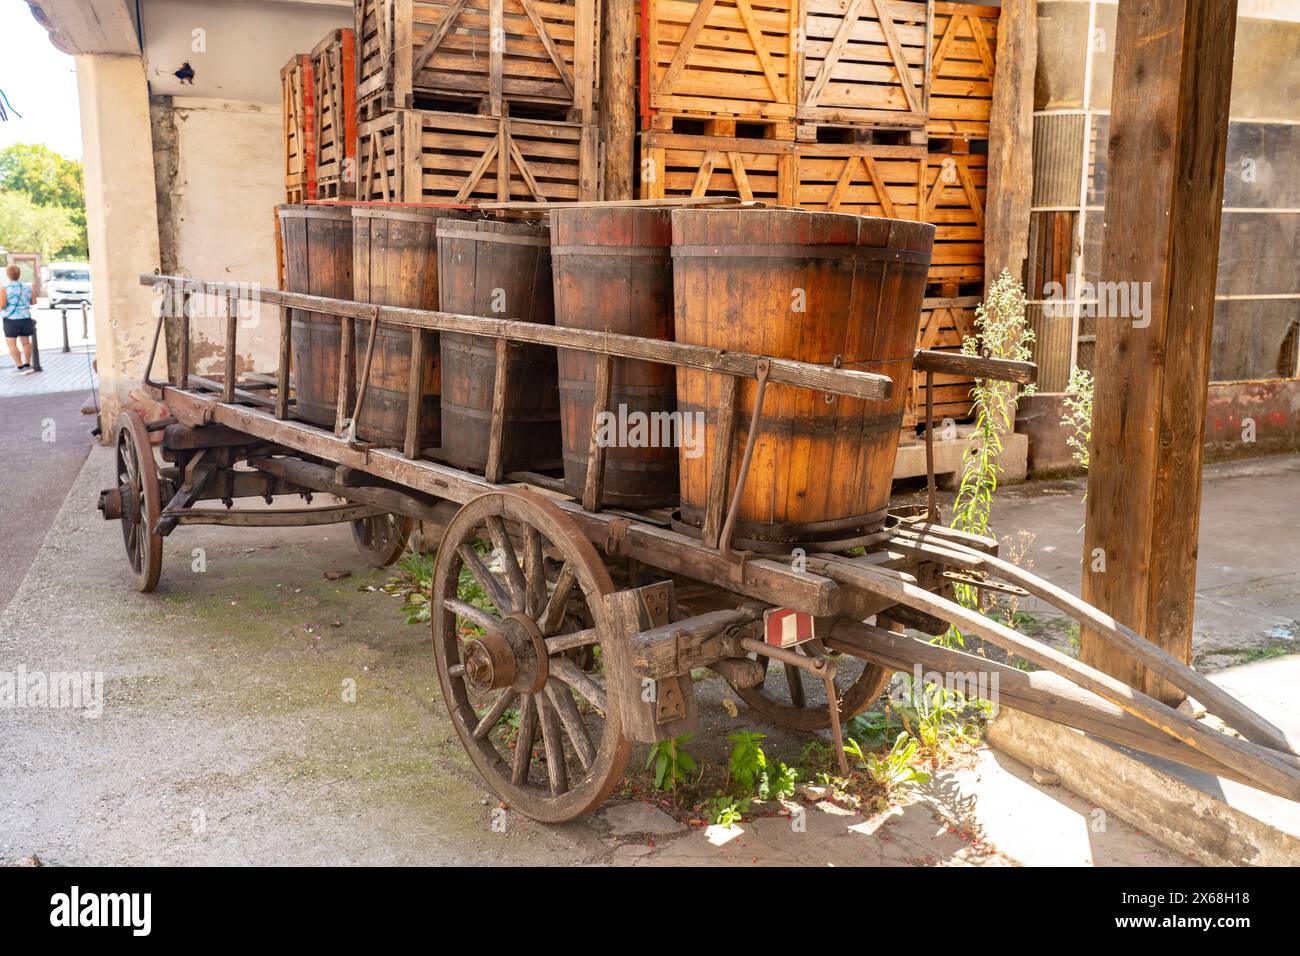 Fûts de vin sur une charrette historique en bois, Ribeauville, Alsace, France Banque D'Images